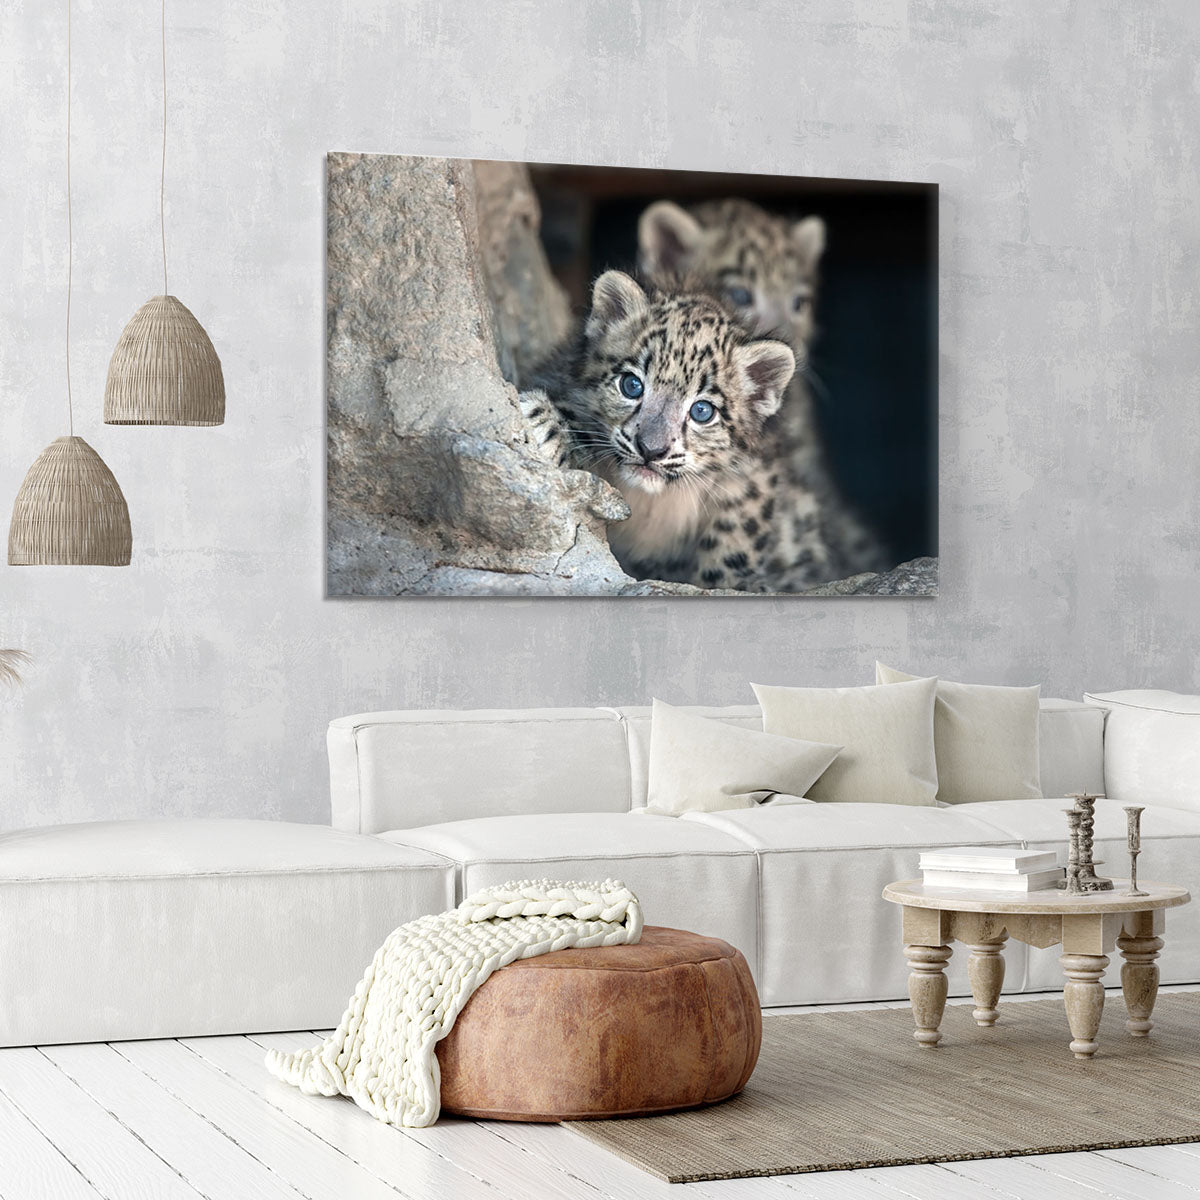 Snow leopard baby portrait Canvas Print or Poster - Canvas Art Rocks - 6